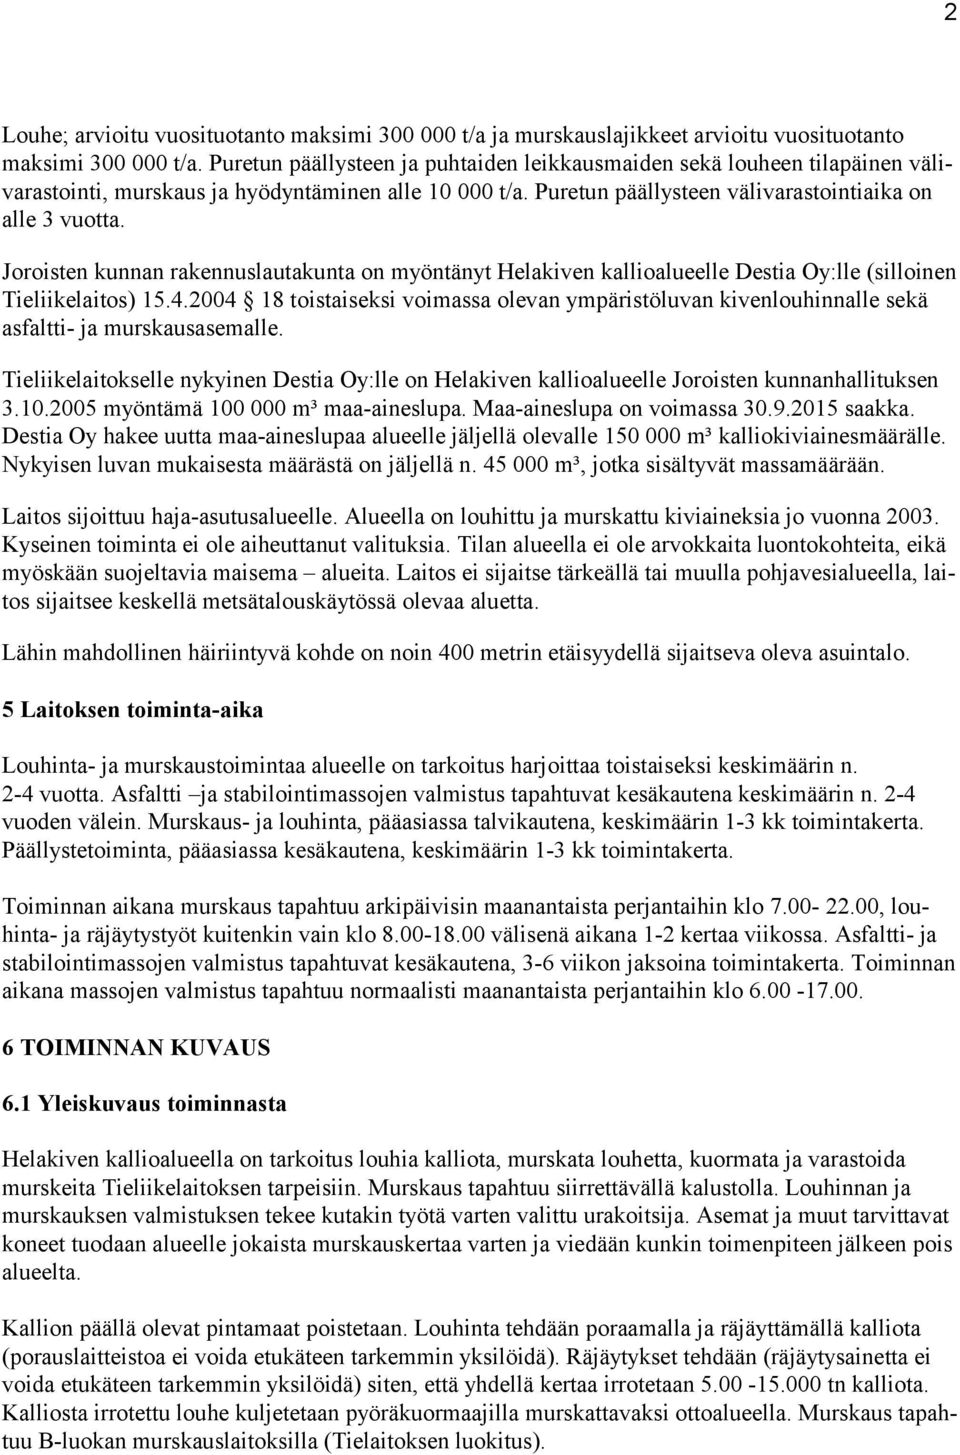 Joroisten kunnan rakennuslautakunta on myöntänyt Helakiven kallioalueelle Destia Oy:lle (silloinen Tieliikelaitos) 15.4.